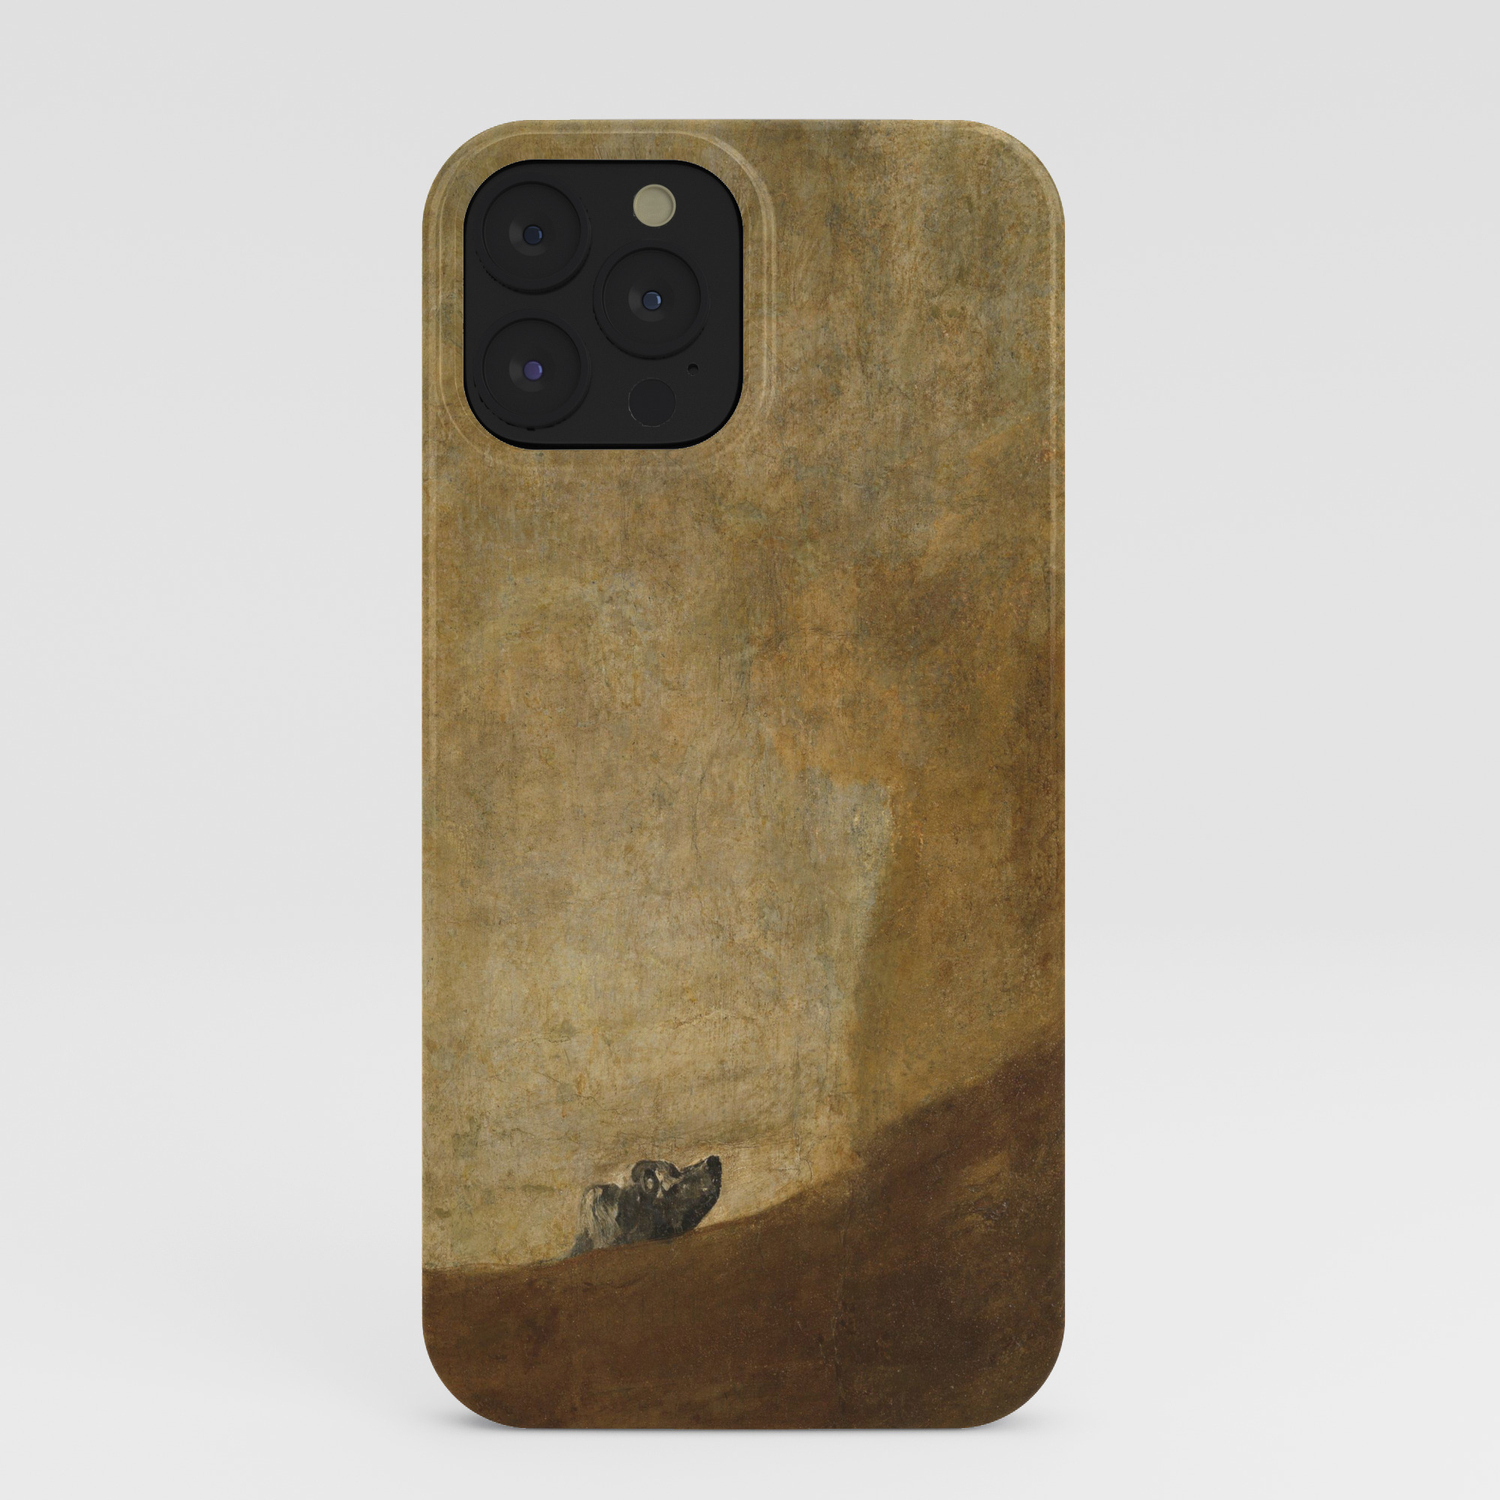 Bảo vệ và thể hiện phong cách của bạn với The Dog by Francisco Goya iPhone Case tuyệt đẹp và đầy ấn tượng. Sản phẩm được làm bằng chất liệu tốt nhất, giúp bảo vệ chiếc điện thoại của bạn tránh được va chạm, trầy xước và rơi vỡ. Hãy xem ngay hình ảnh liên quan để cảm nhận sự độc đáo và tuyệt vời của sản phẩm này.